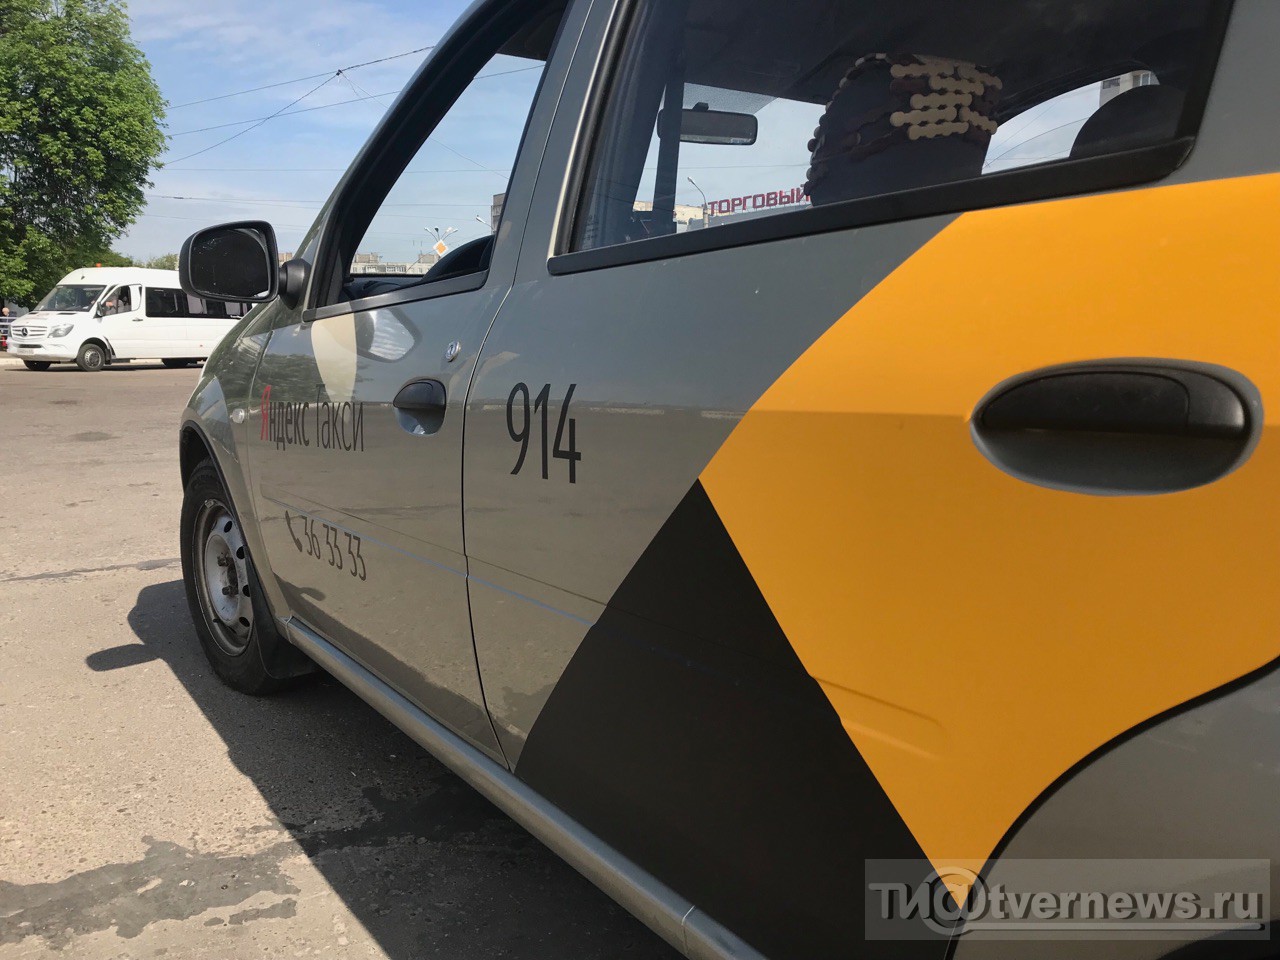 Машина Технопарк металл. Renault Logan Такси (12,5см) инерц,свет,звук,в/к SB-13-21-3 SB-13-21-3